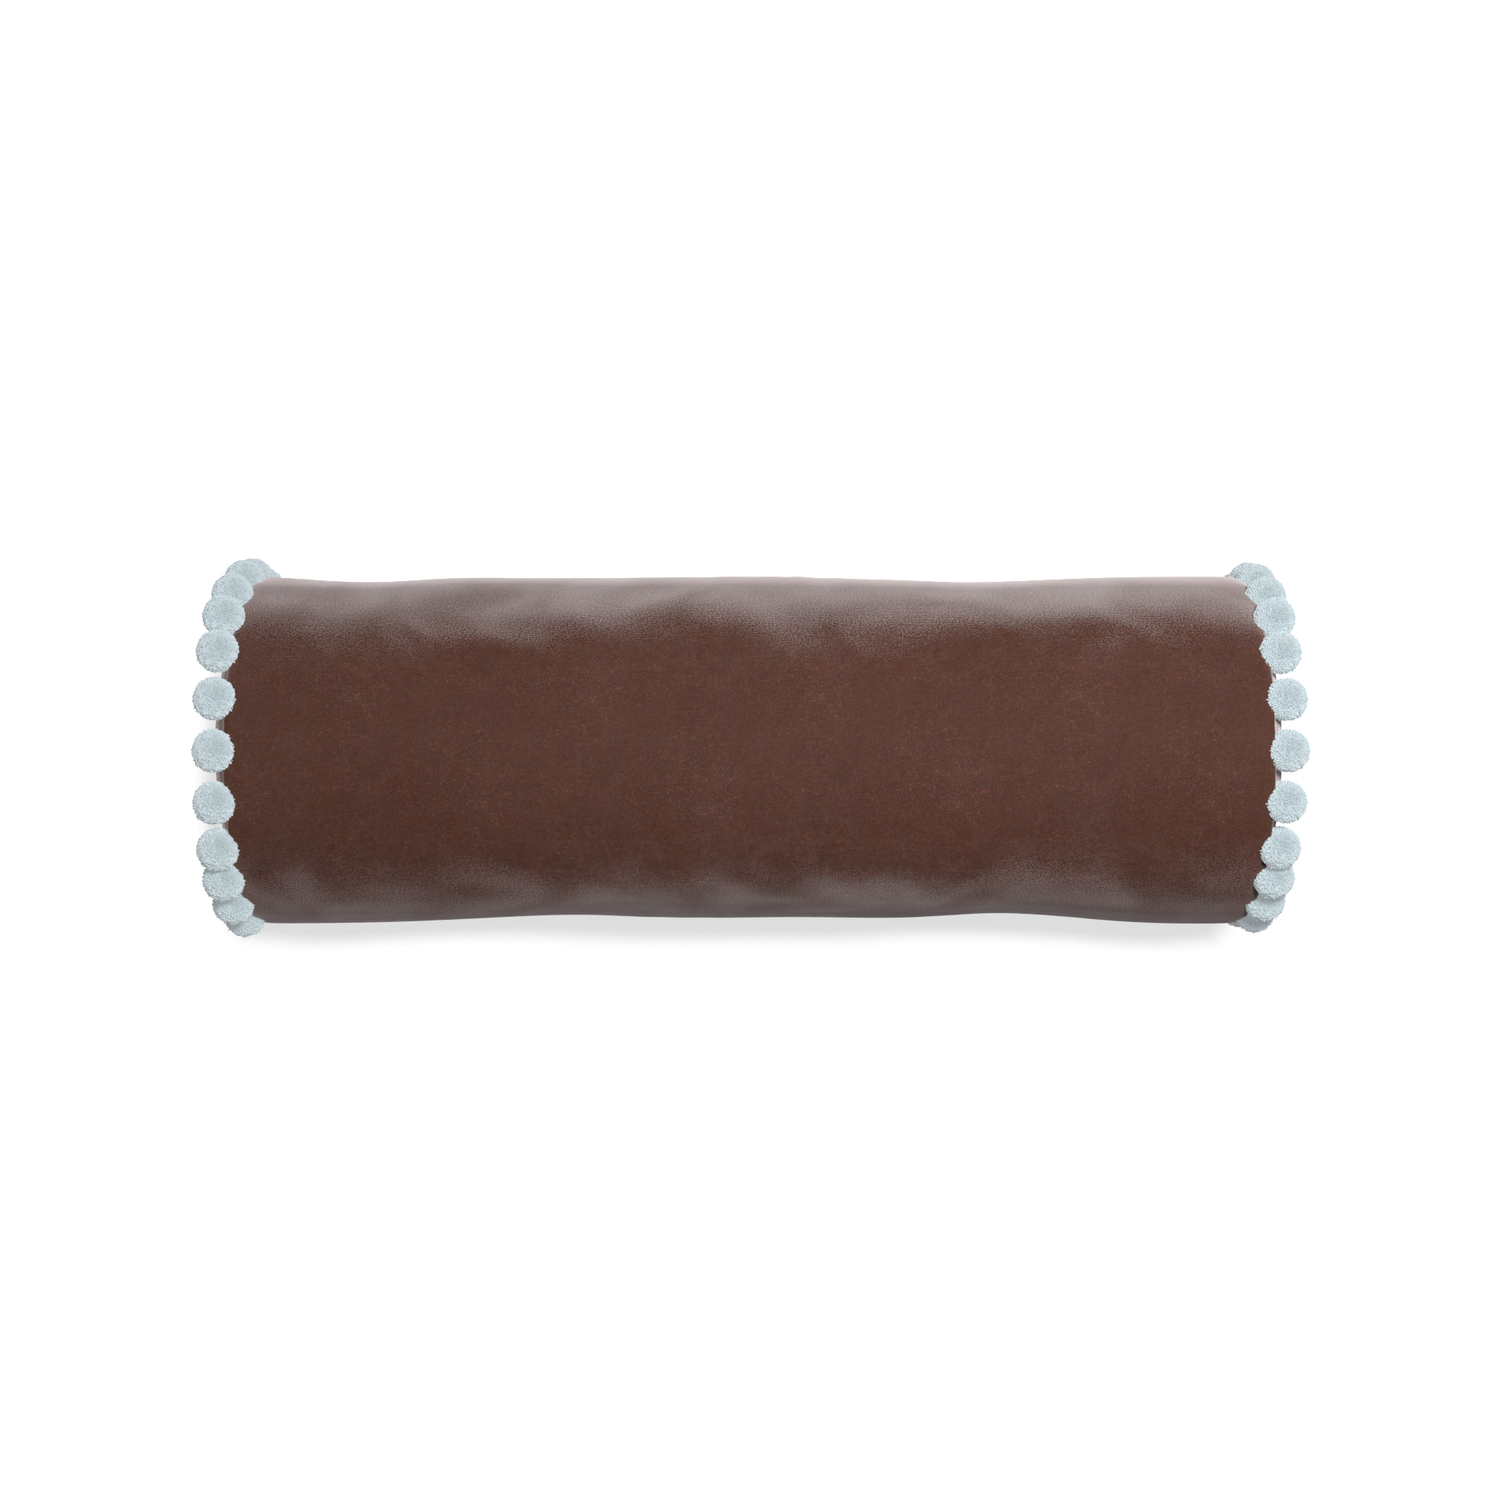 bolster brown velvet pillow with light blue pom poms